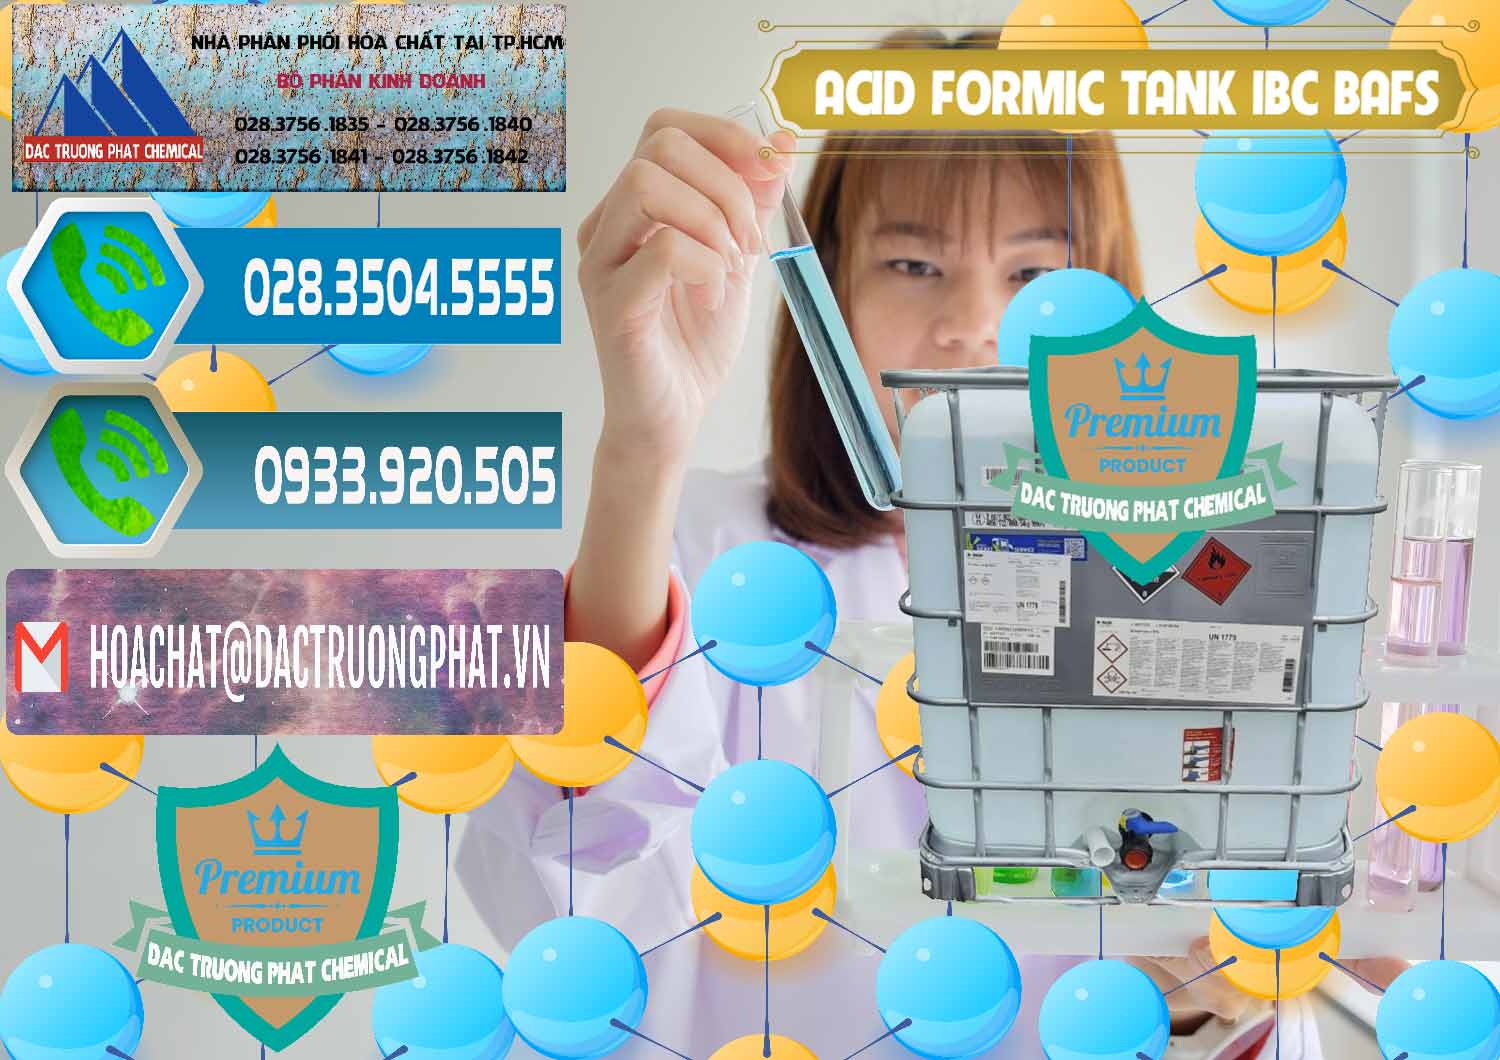 Nơi bán và cung ứng Acid Formic - Axit Formic Tank - Bồn IBC BASF Đức - 0366 - Cty chuyên cung ứng _ phân phối hóa chất tại TP.HCM - congtyhoachat.net